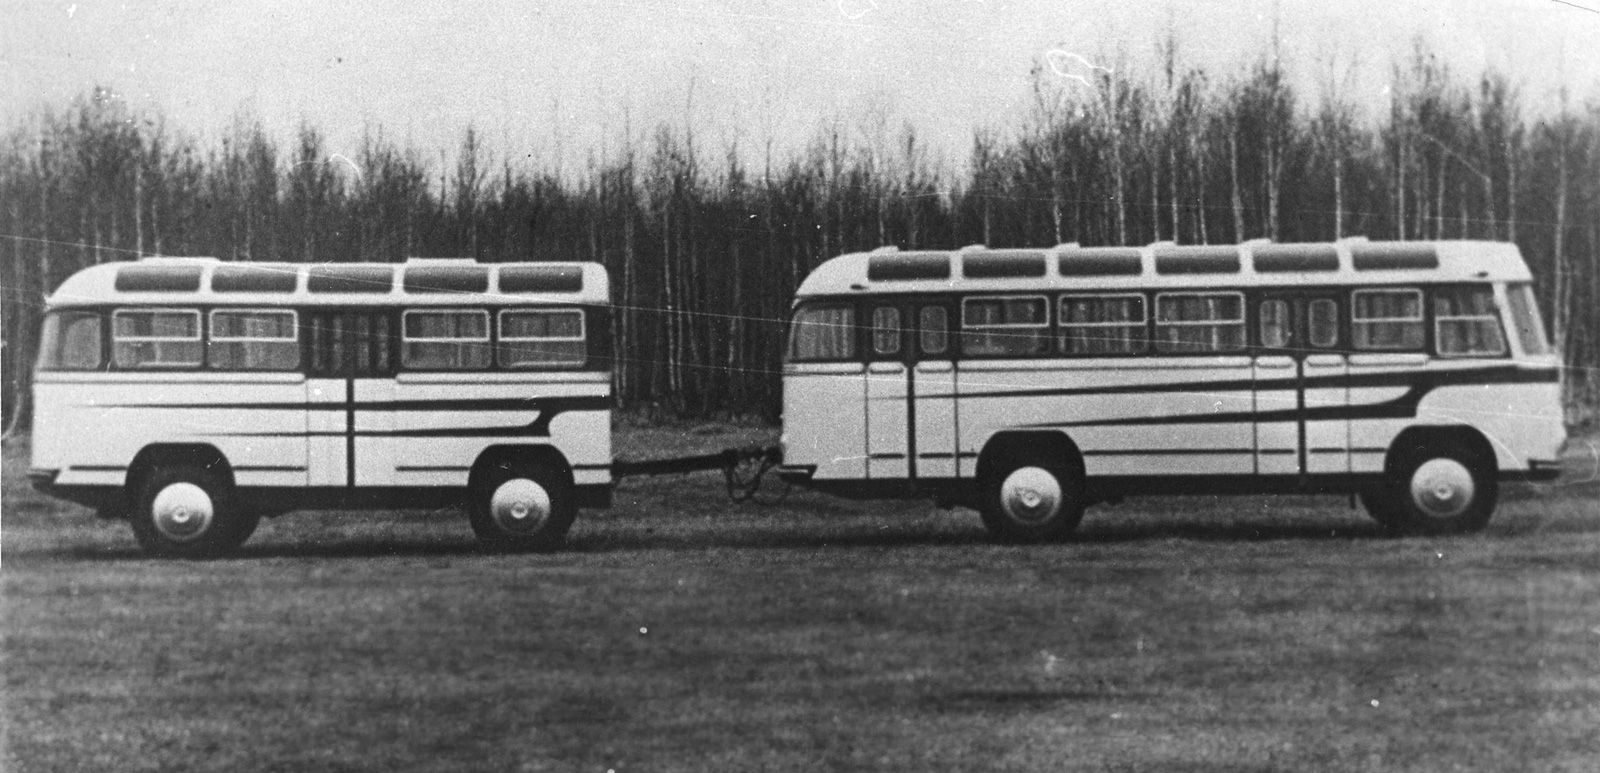 Полный привод, прицеп и кабриолет: зачем в СССР делали странные автобусы